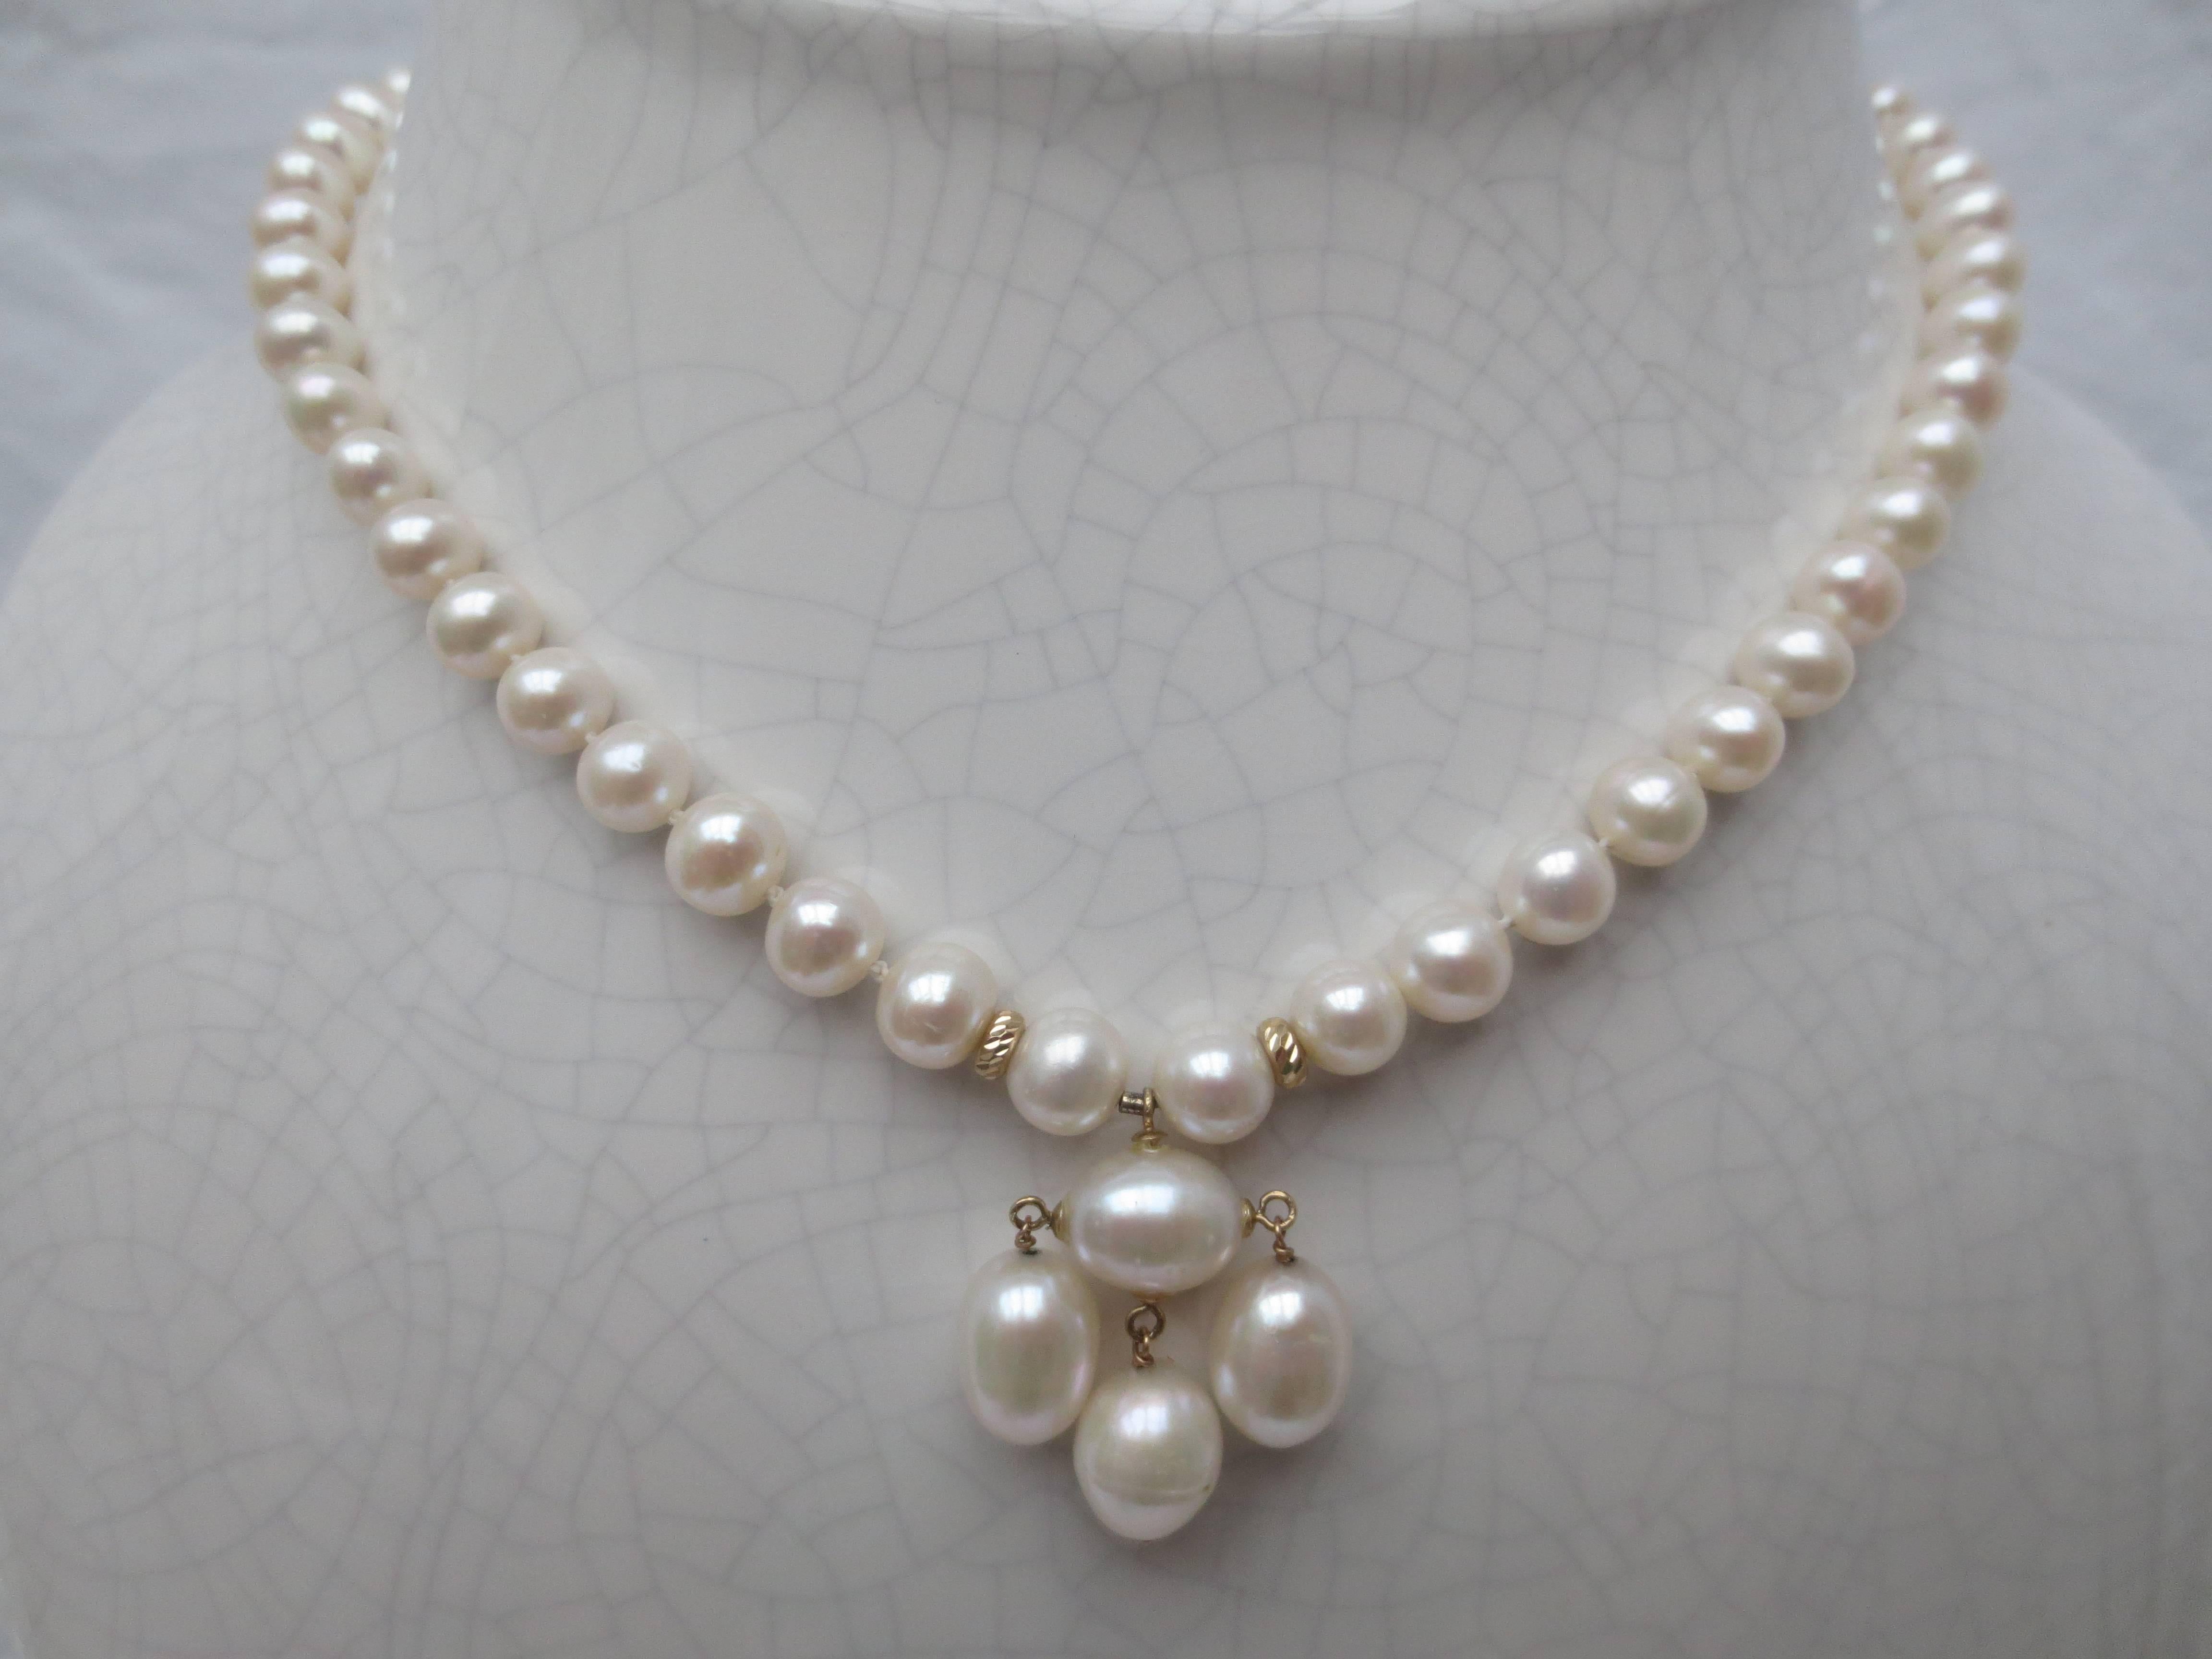 Ce collier de perles graduées, à la fois simple et magnifique, a été fabriqué à la main par Marina J. Ce collier de perles entièrement composé de perles blanches d'un lustre élevé qui présentent un bel éclat irisé allant de 1,5 à 7 mm. Mesurant 16,5